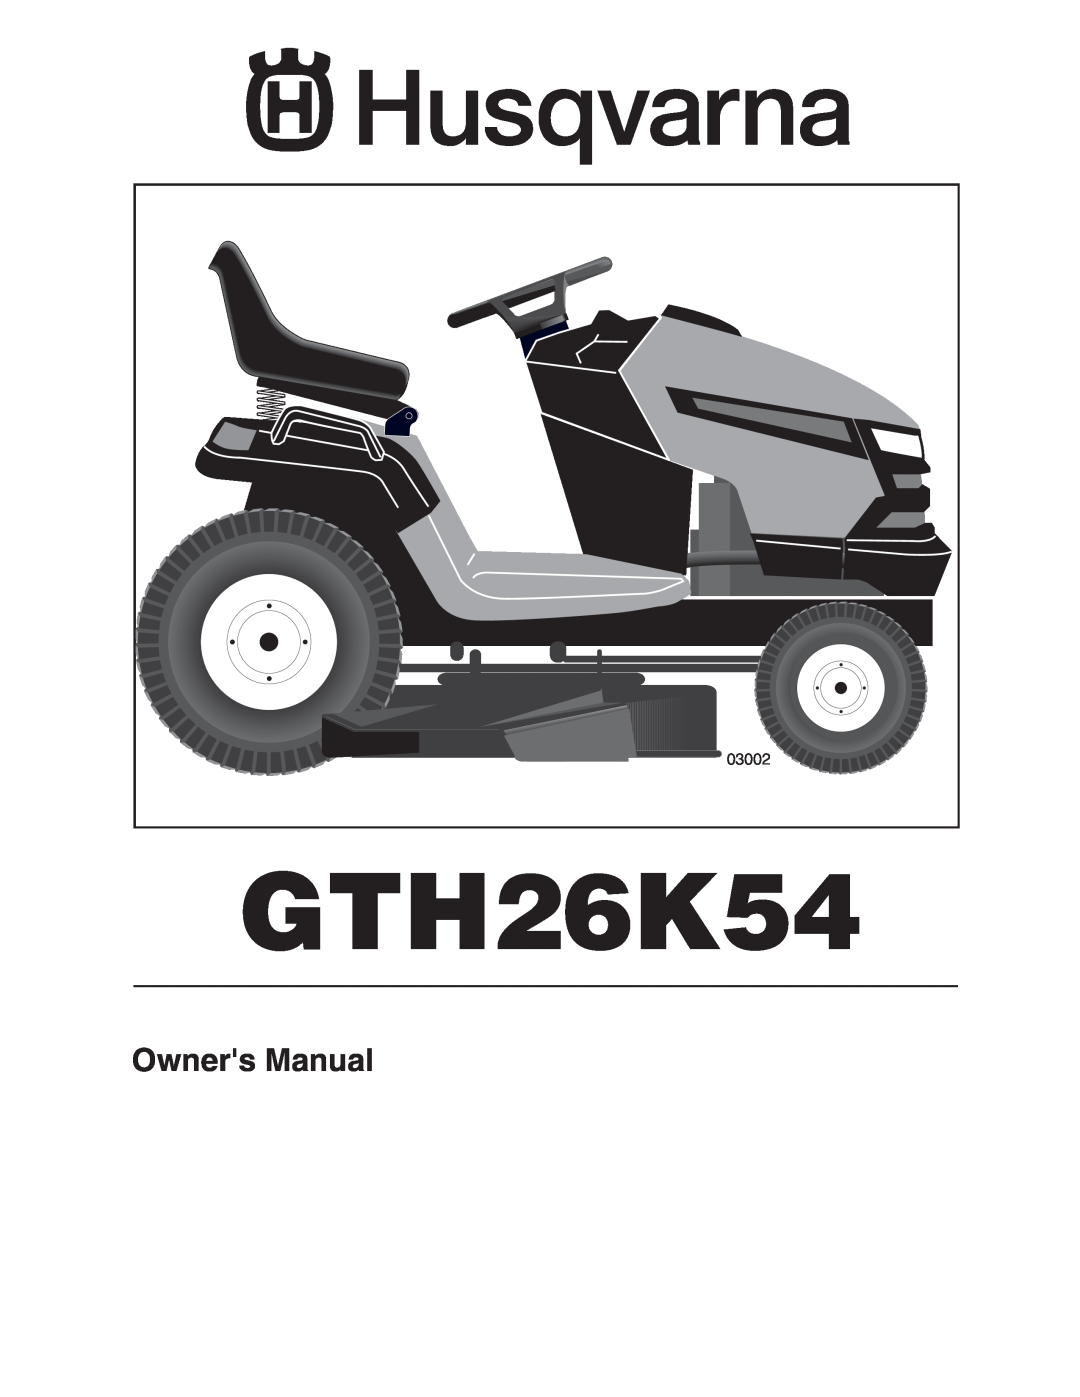 Husqvarna GTH26K54 owner manual Owners Manual 